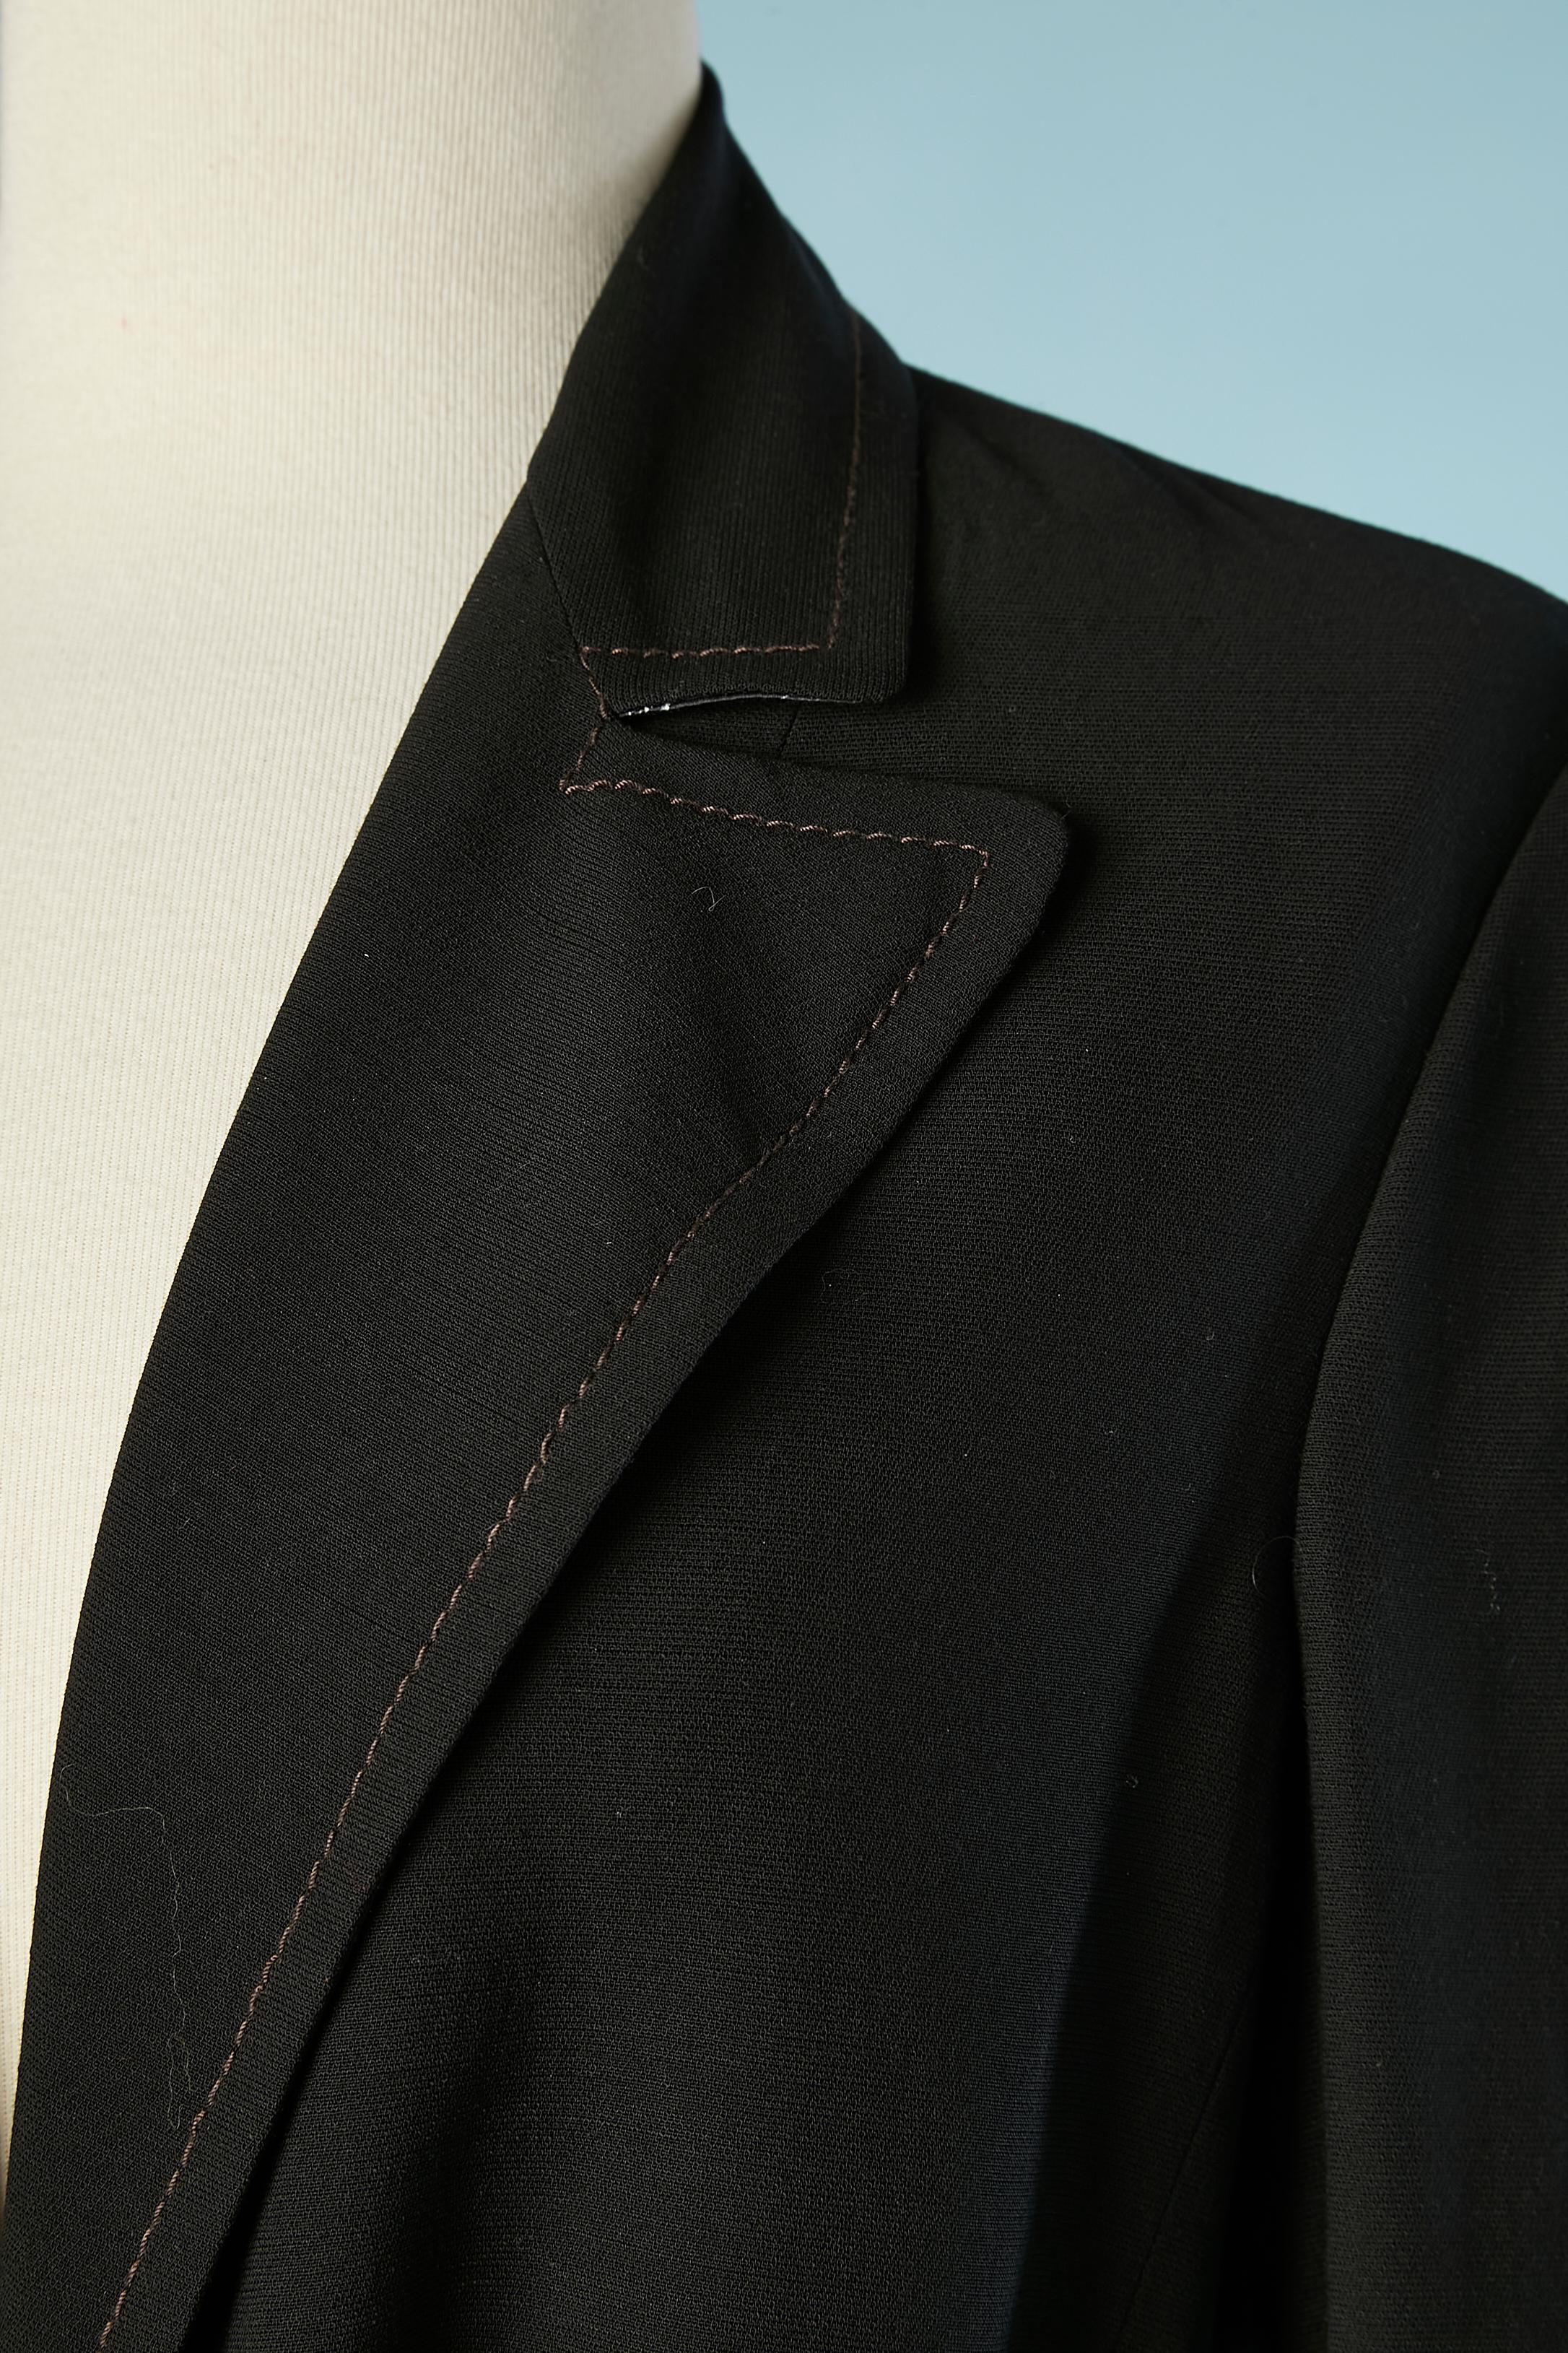 Ensemble veste noire et jupe enveloppante en soie imprimée. Ceinture en tissu imprimé (identique à la jupe) à la taille de la veste. Un bouton marqué pour le fermer. Surpiqûres sur le col et les poches. L'étiquette de composition du tissu a été